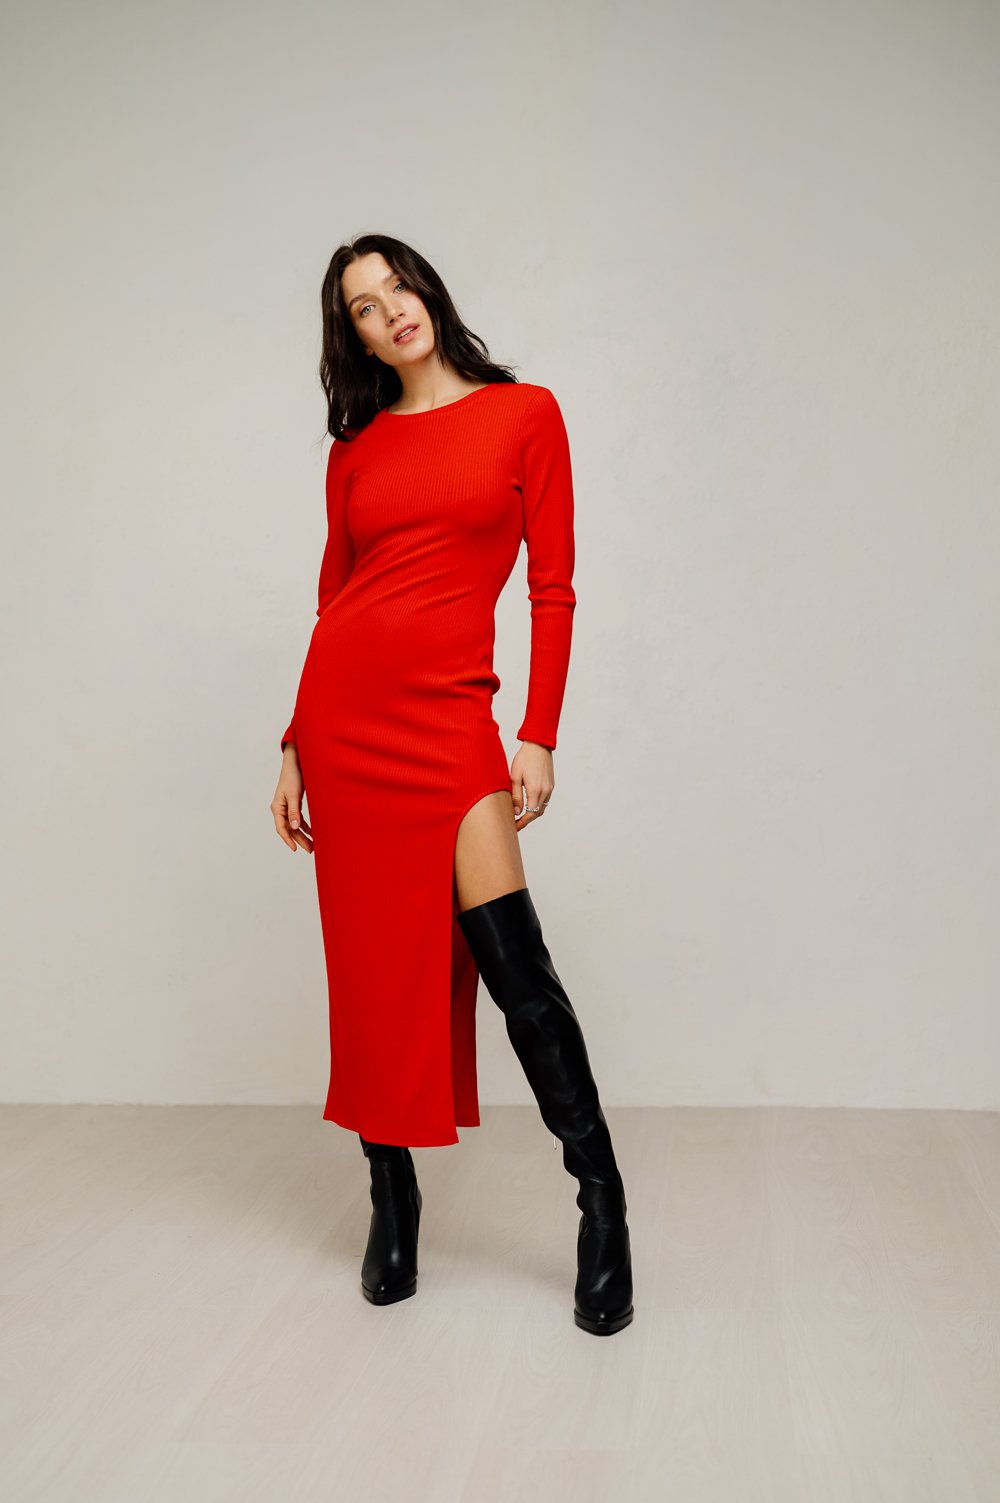 Червона сукня довжини міді з витонченим вирізом зліва.